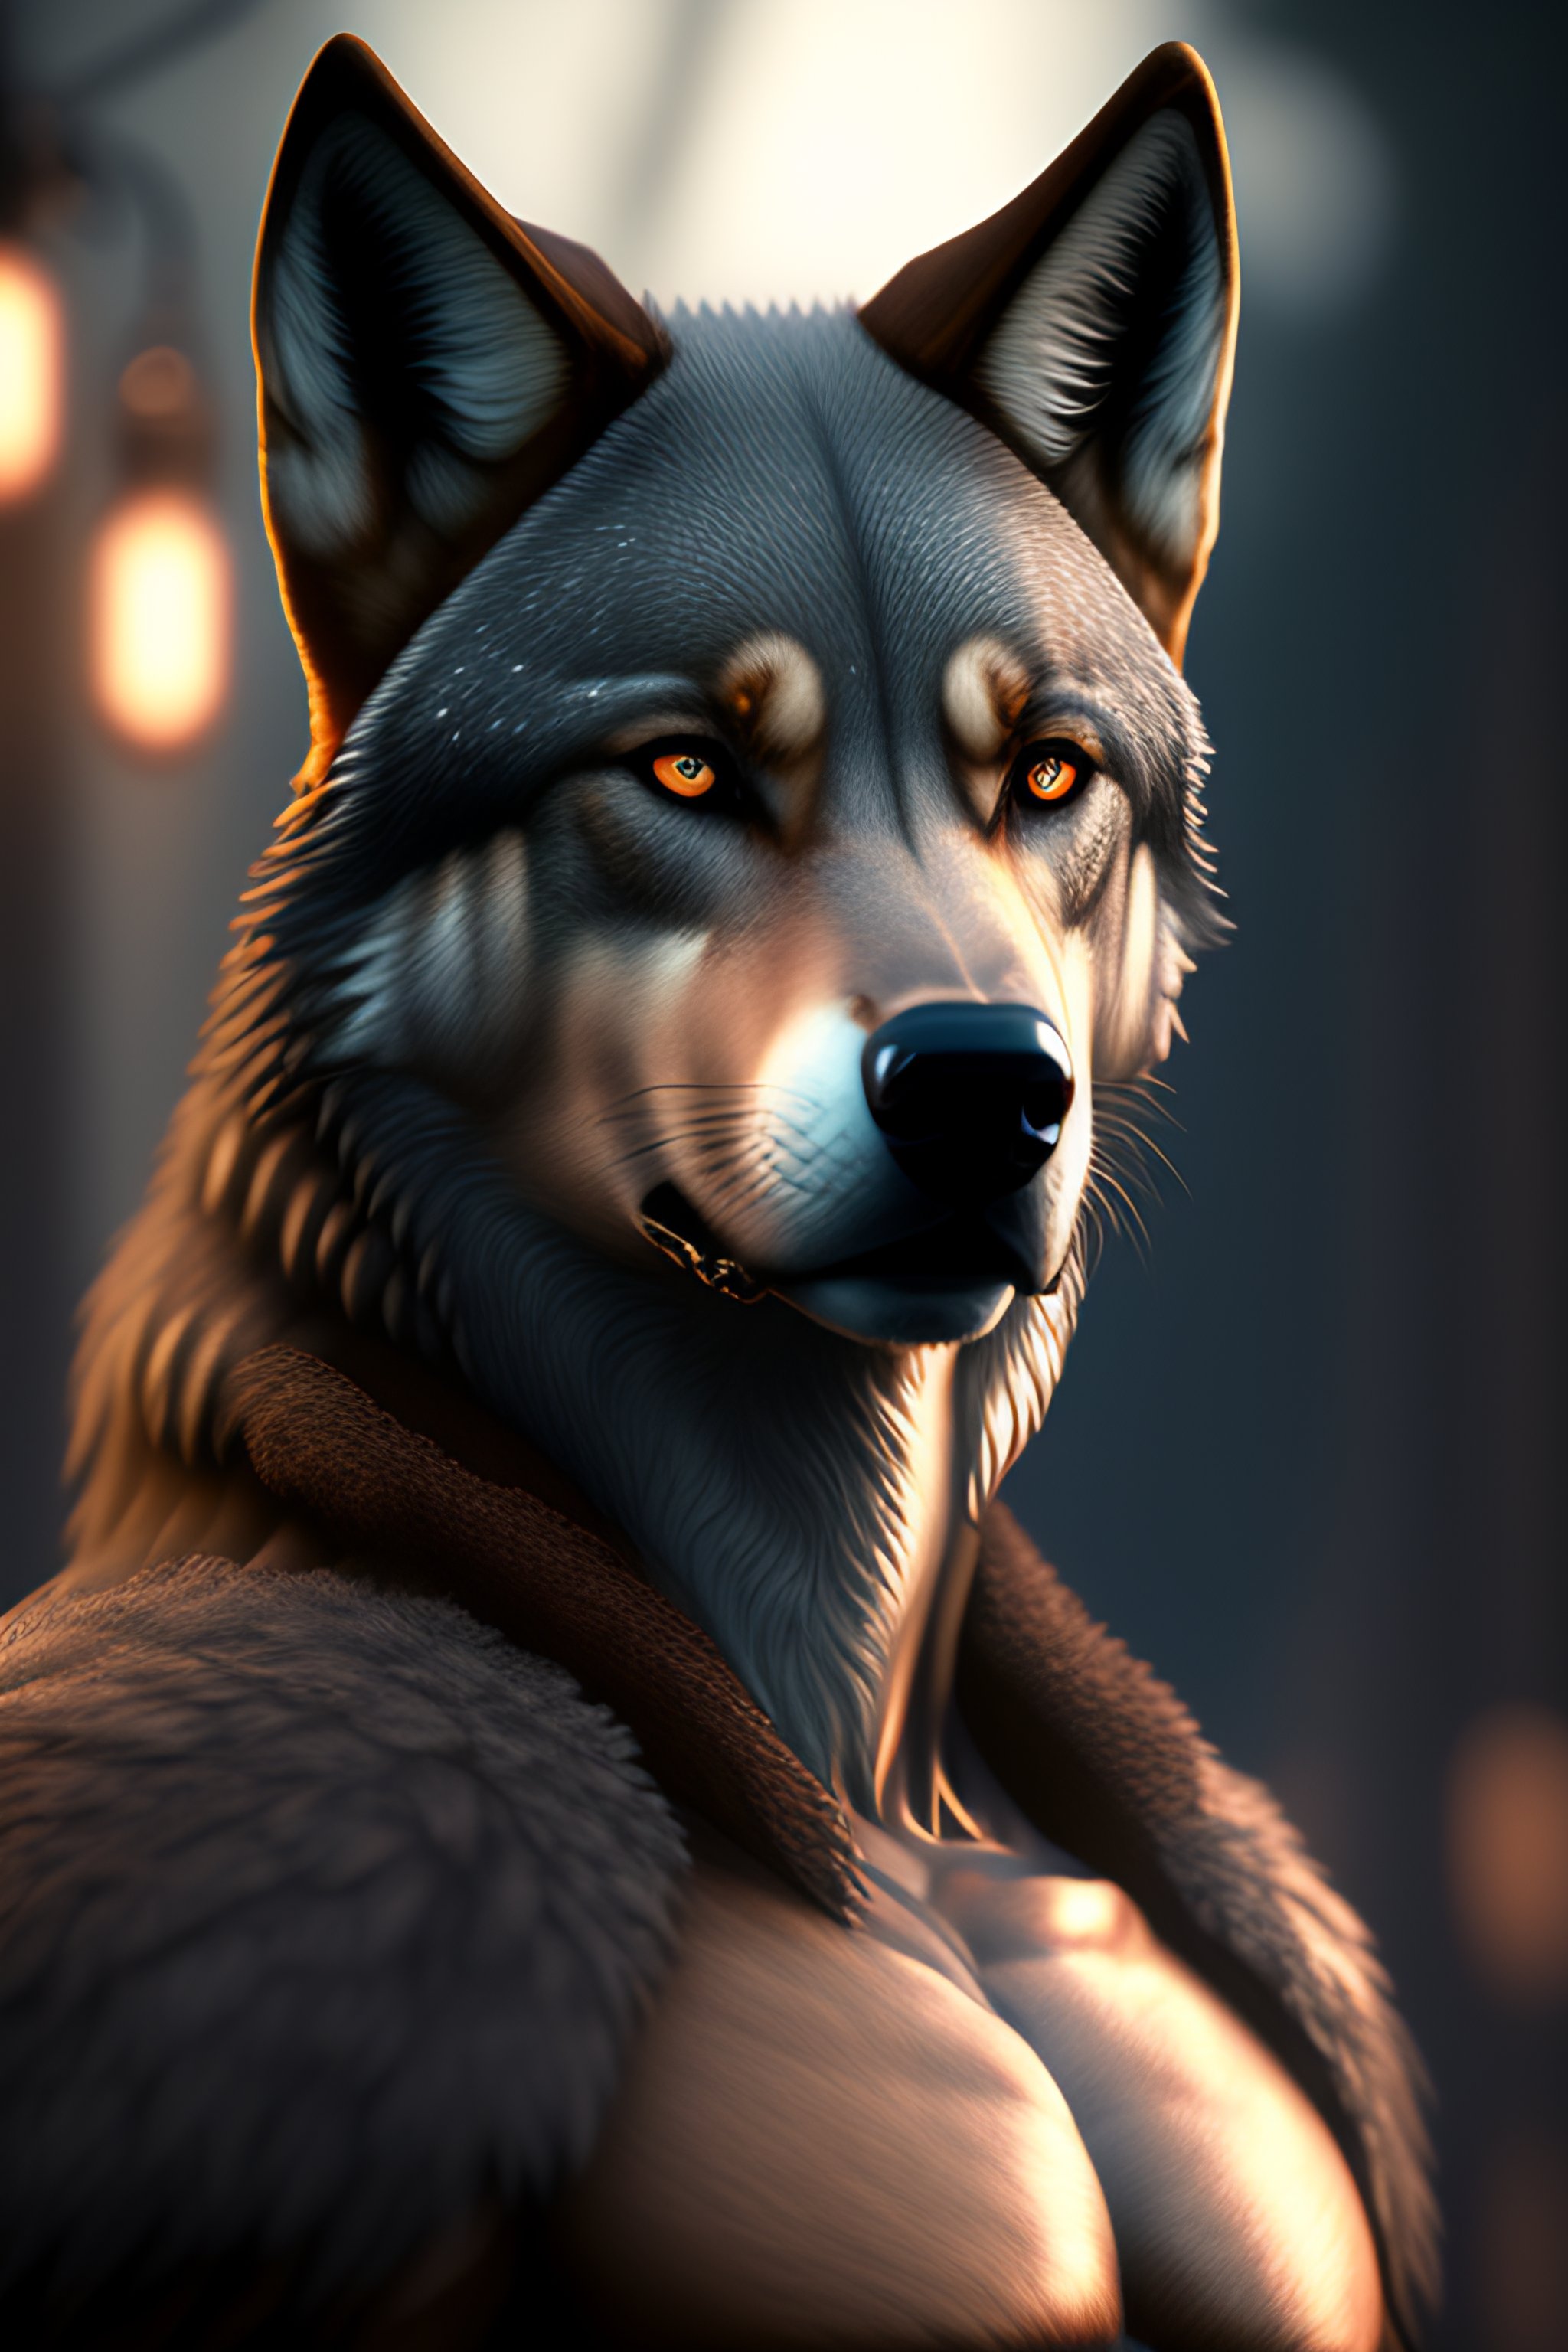 Anthropomorphic wolf